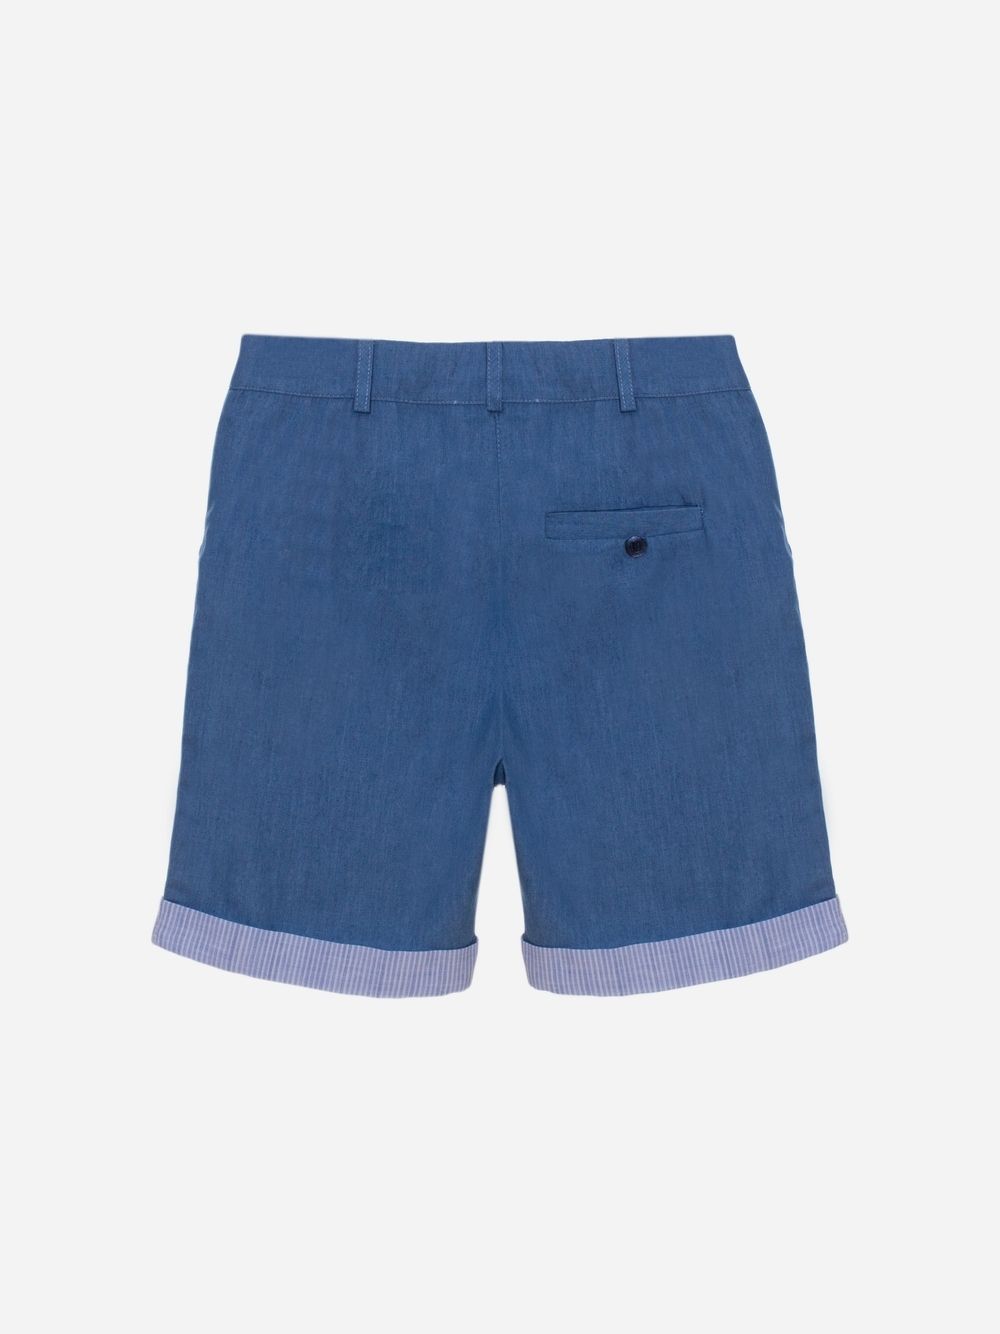 Indigo Blue boys shorts with belt